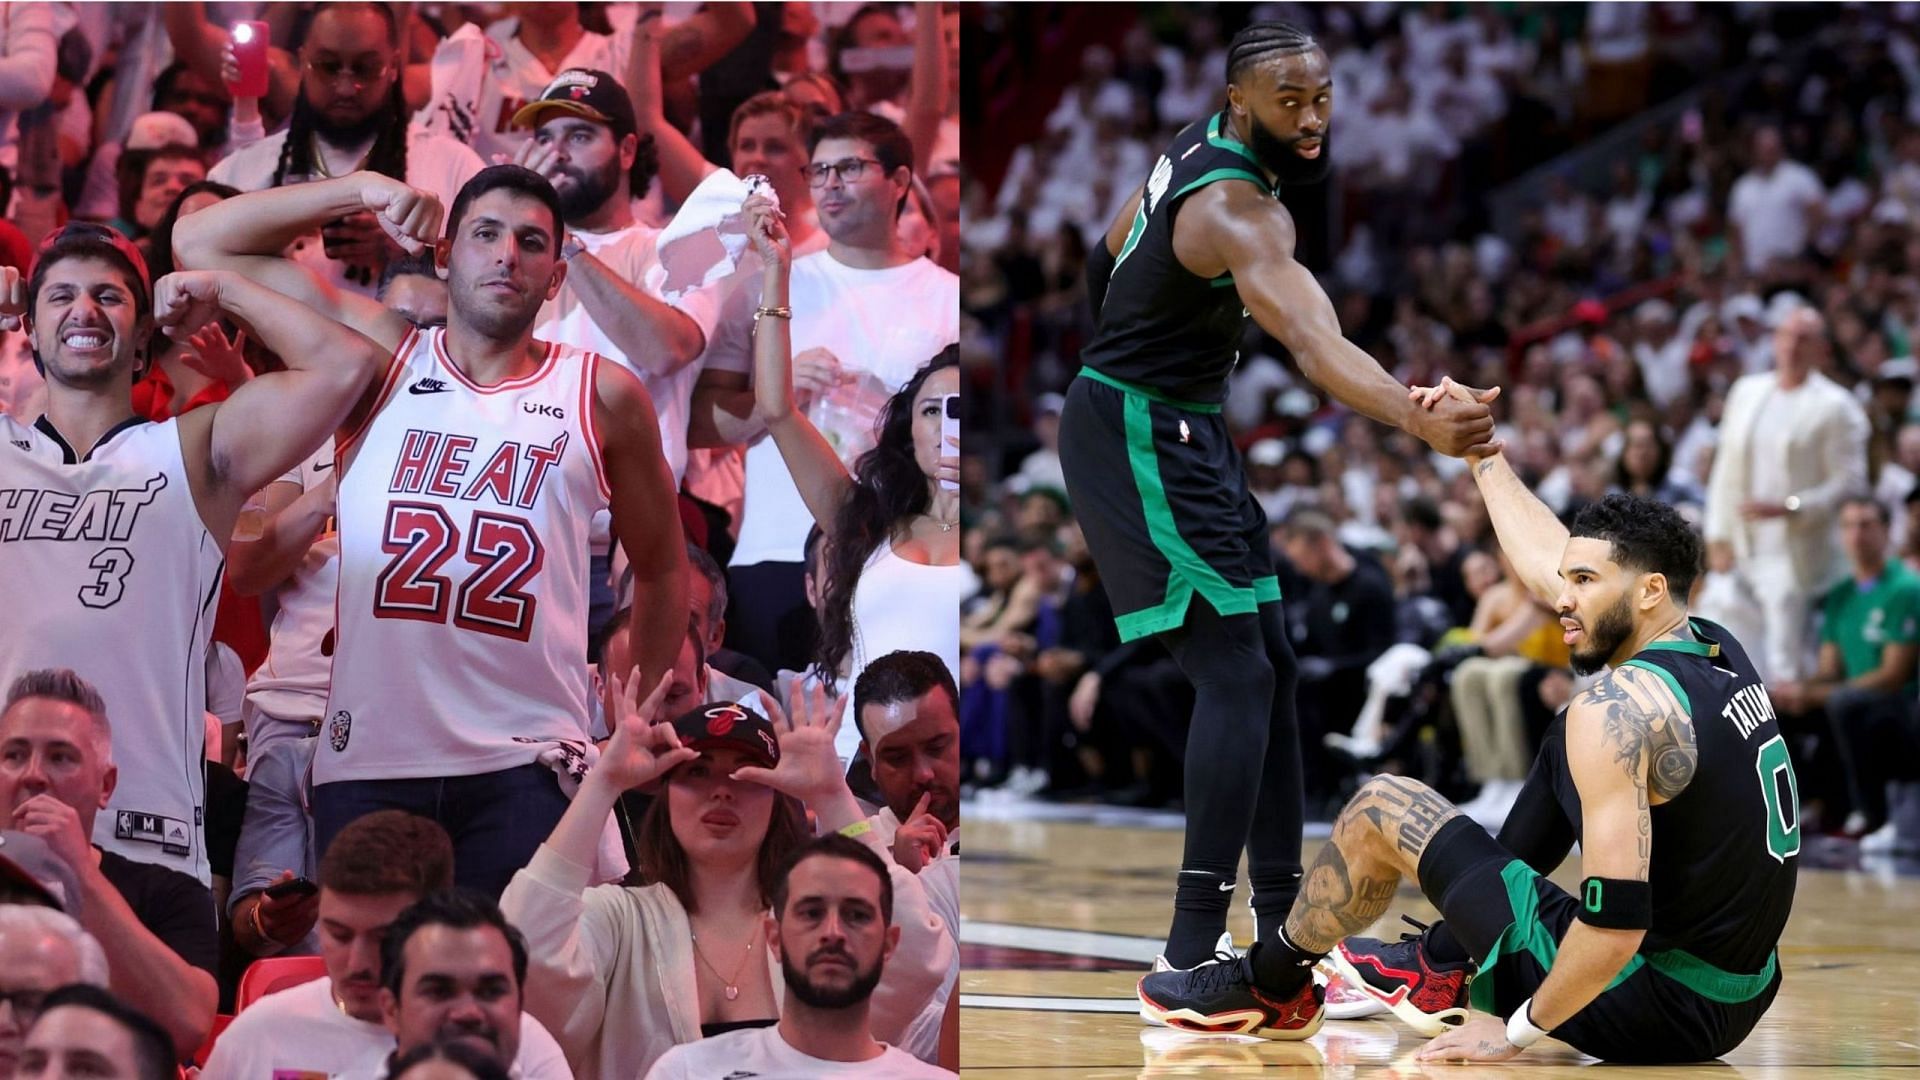 Miami Heat fans and the Boston Celtics.